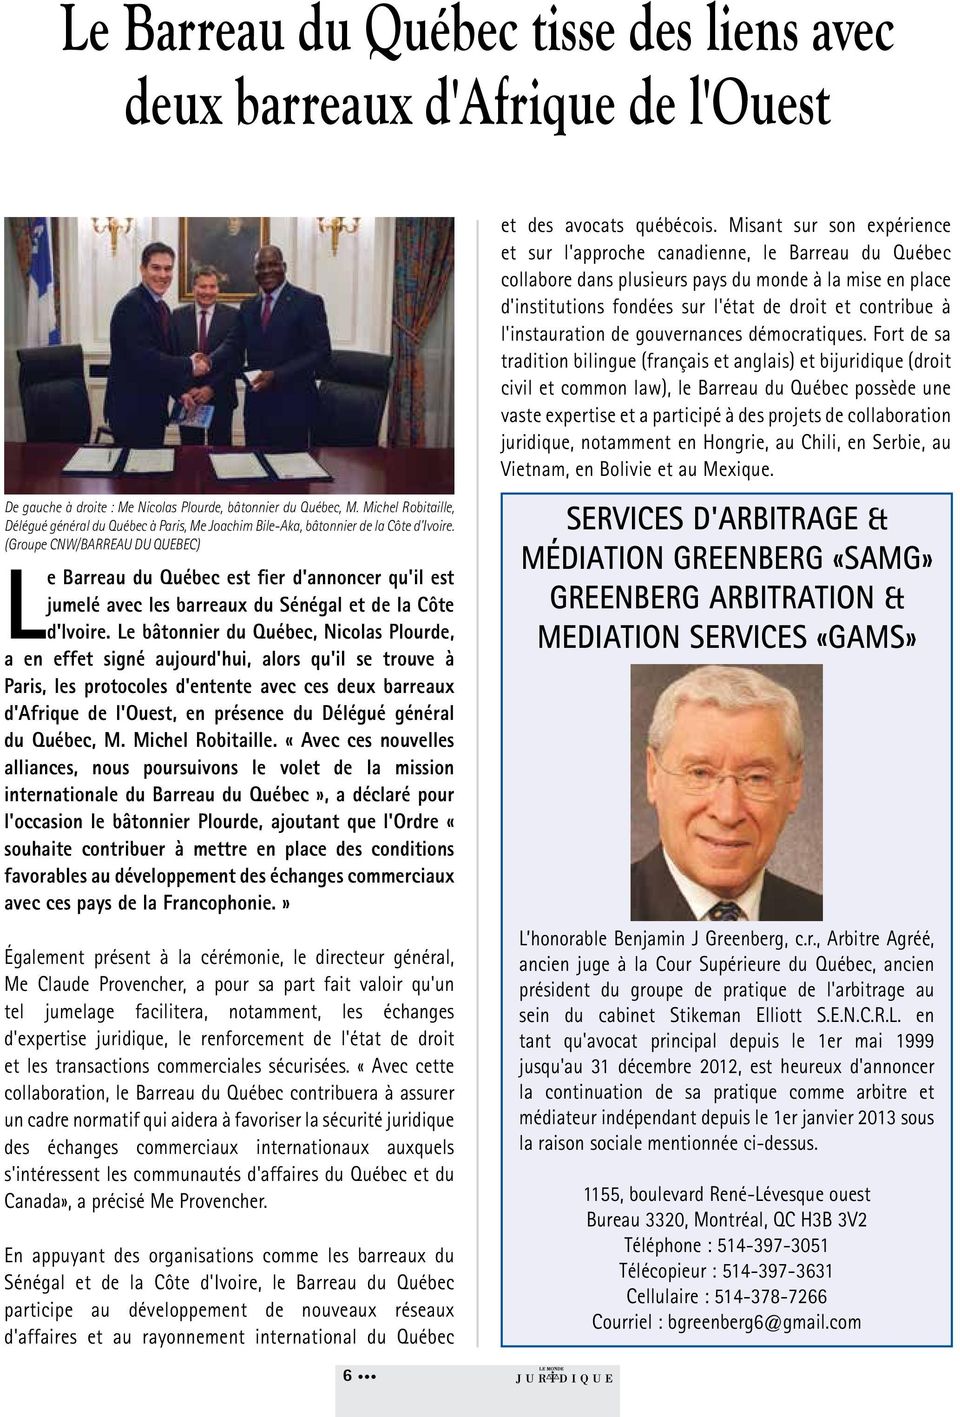 (Groupe CNW/BARREAU DU QUEBEC) Le Barreau du Québec est fier d'annoncer qu'il est jumelé avec les barreaux du Sénégal et de la Côte d'ivoire.